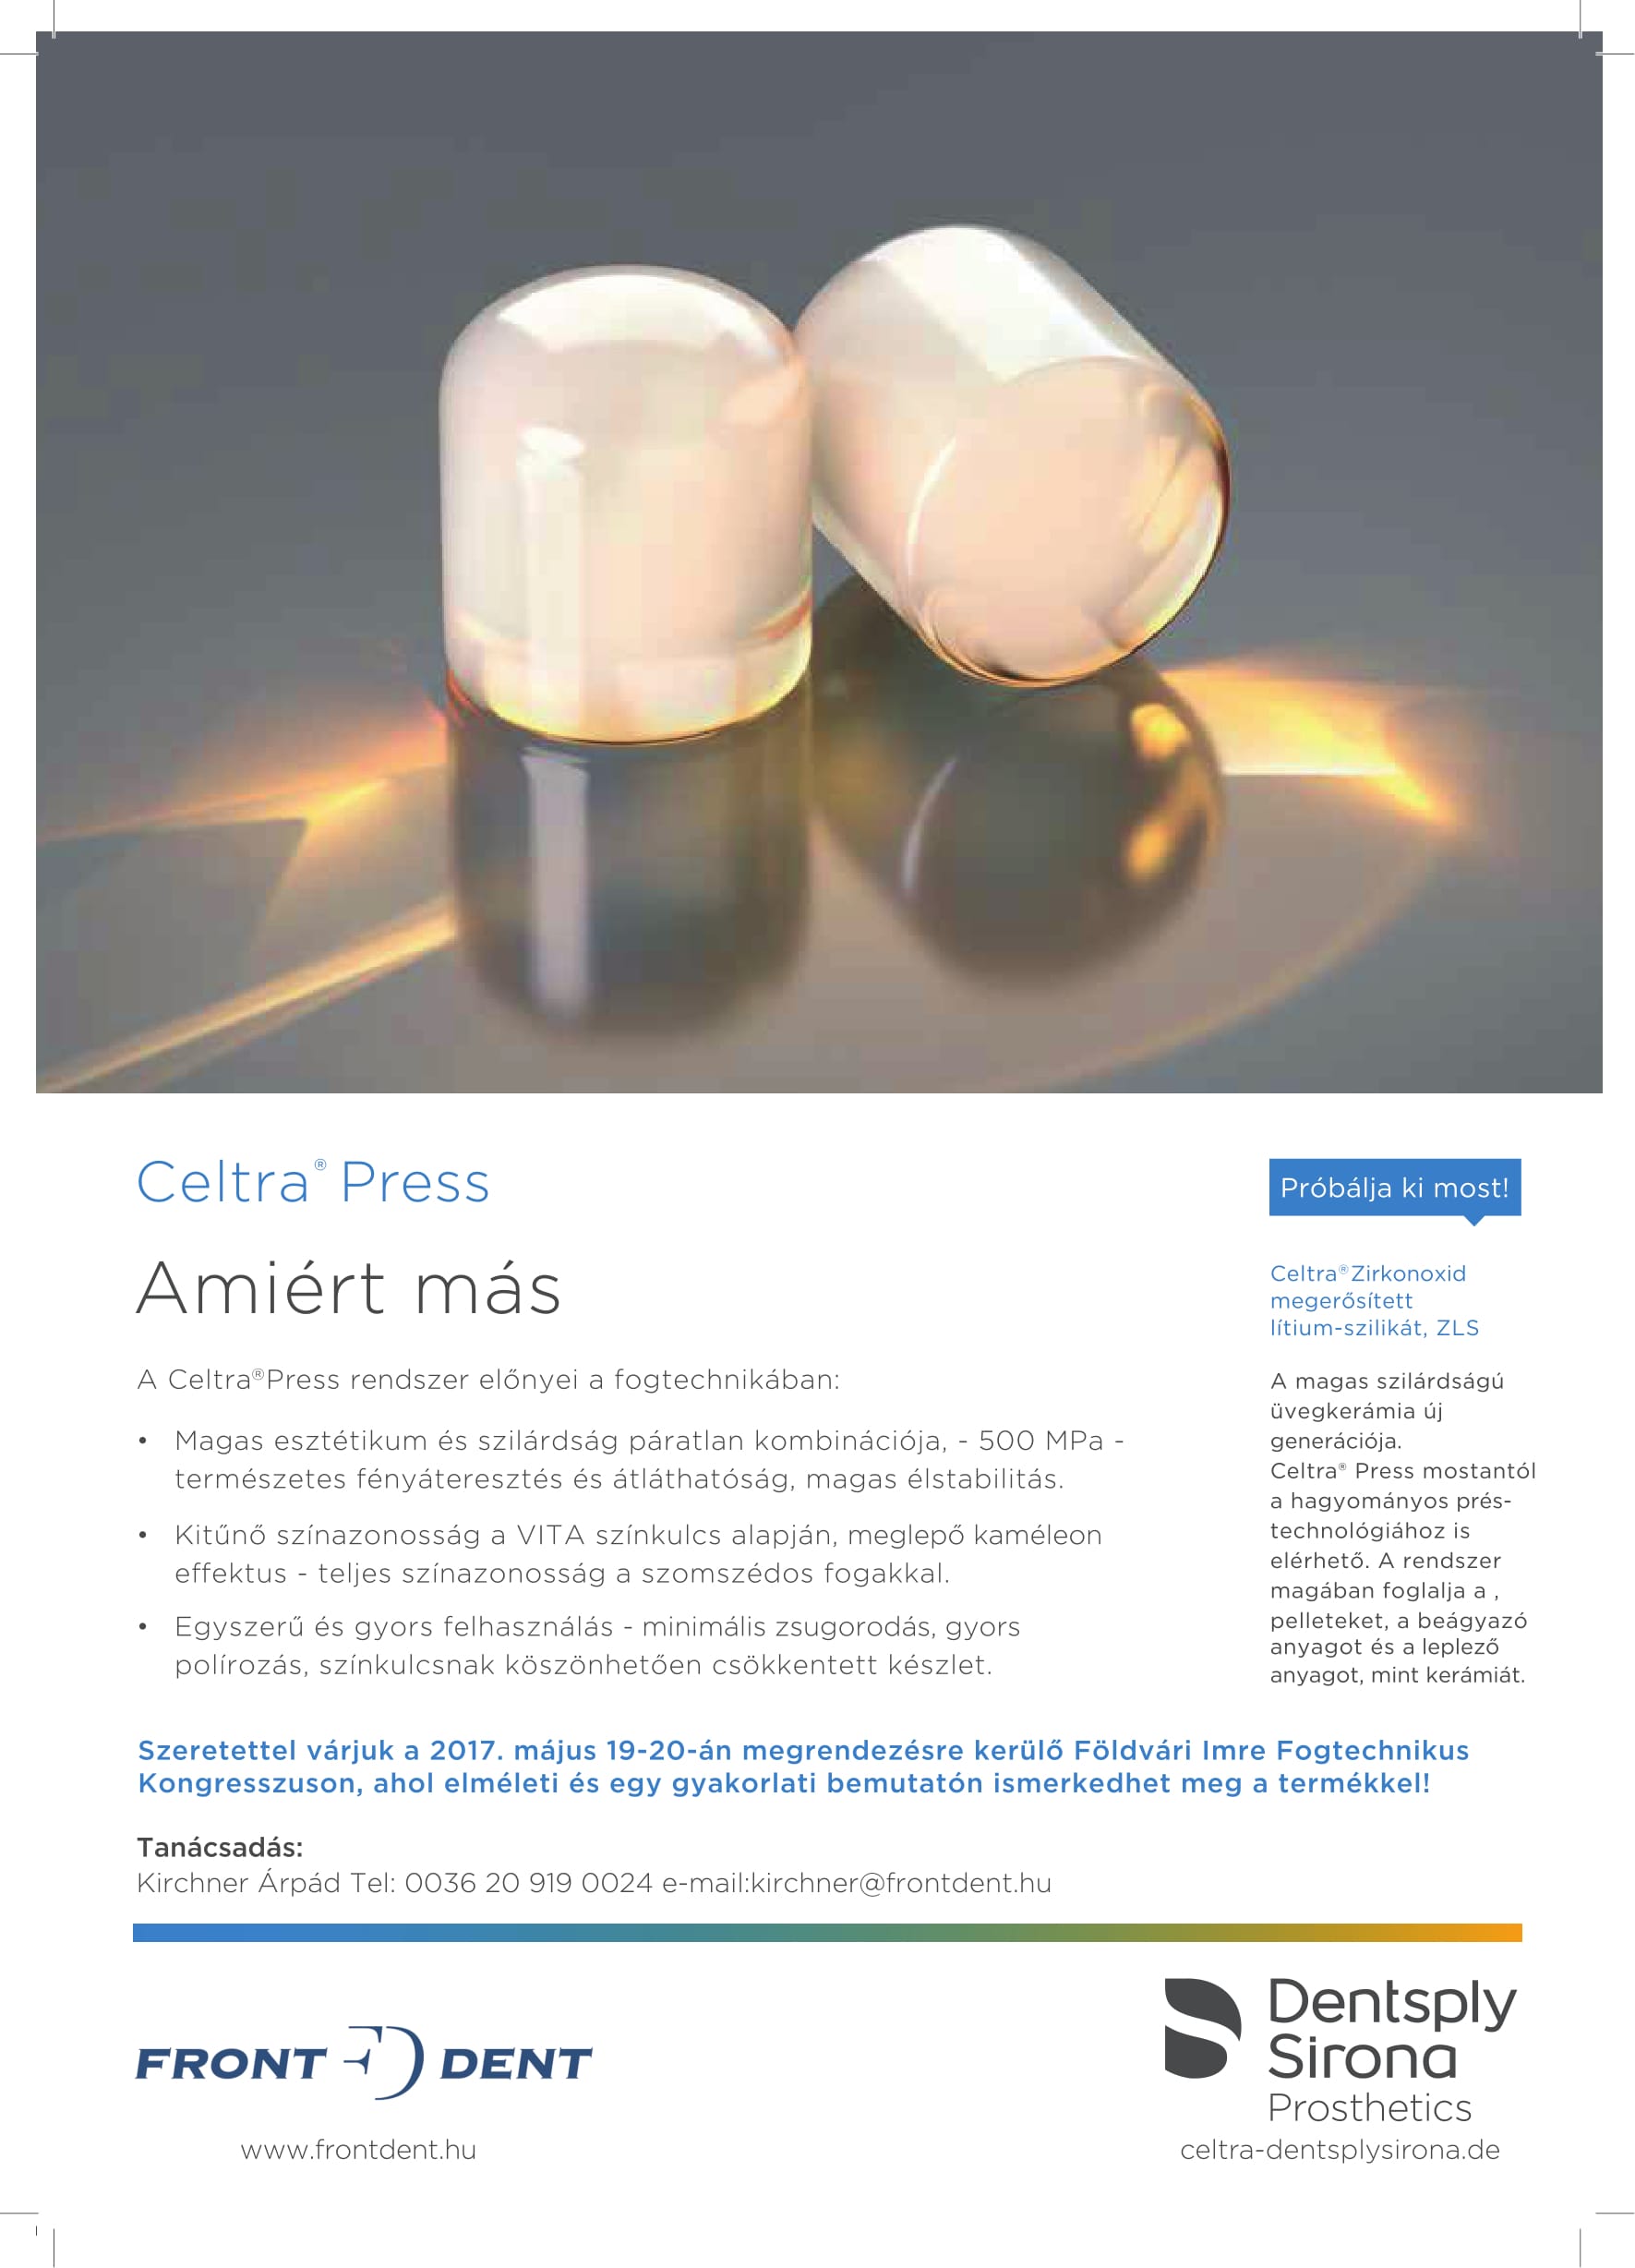 Celtra Press - Amiért más